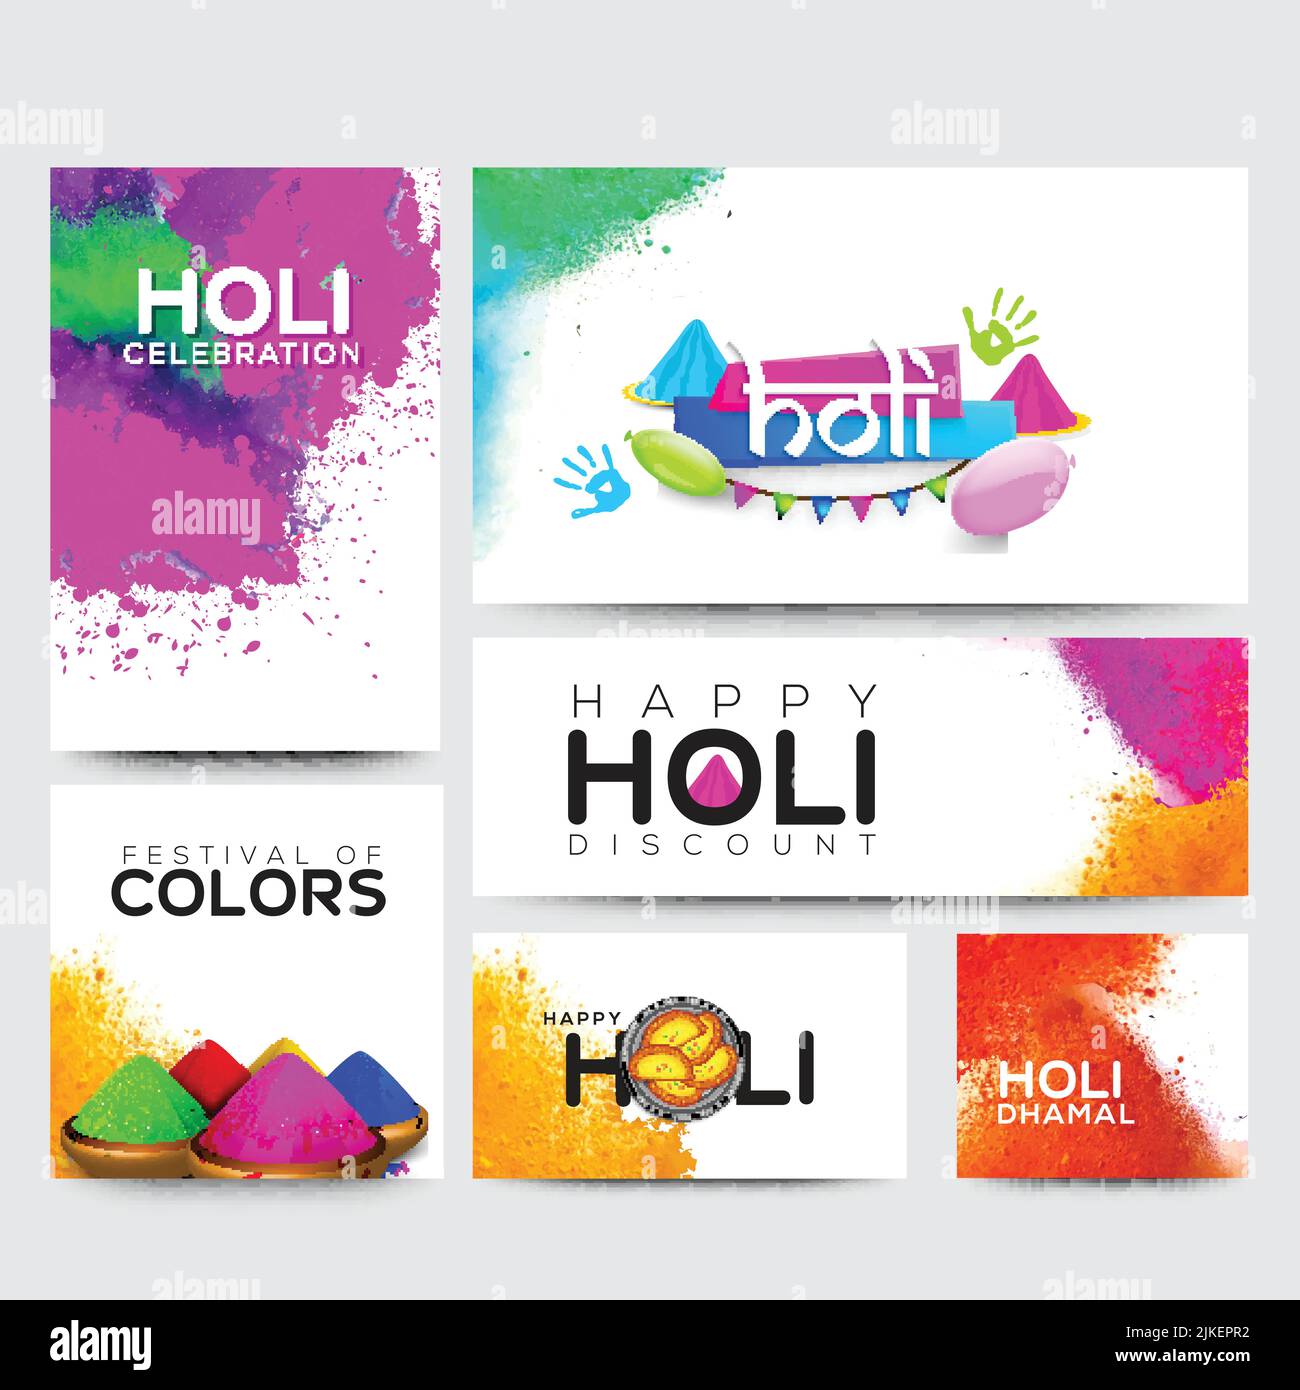 Das indische Festival der Farben, Happy Holi Social Media Sets umfasst quadratische Pfosten- und Bannergrößen mit Farbspritzern und traditionelle Süßigkeiten (Gujhiya). Stock Vektor